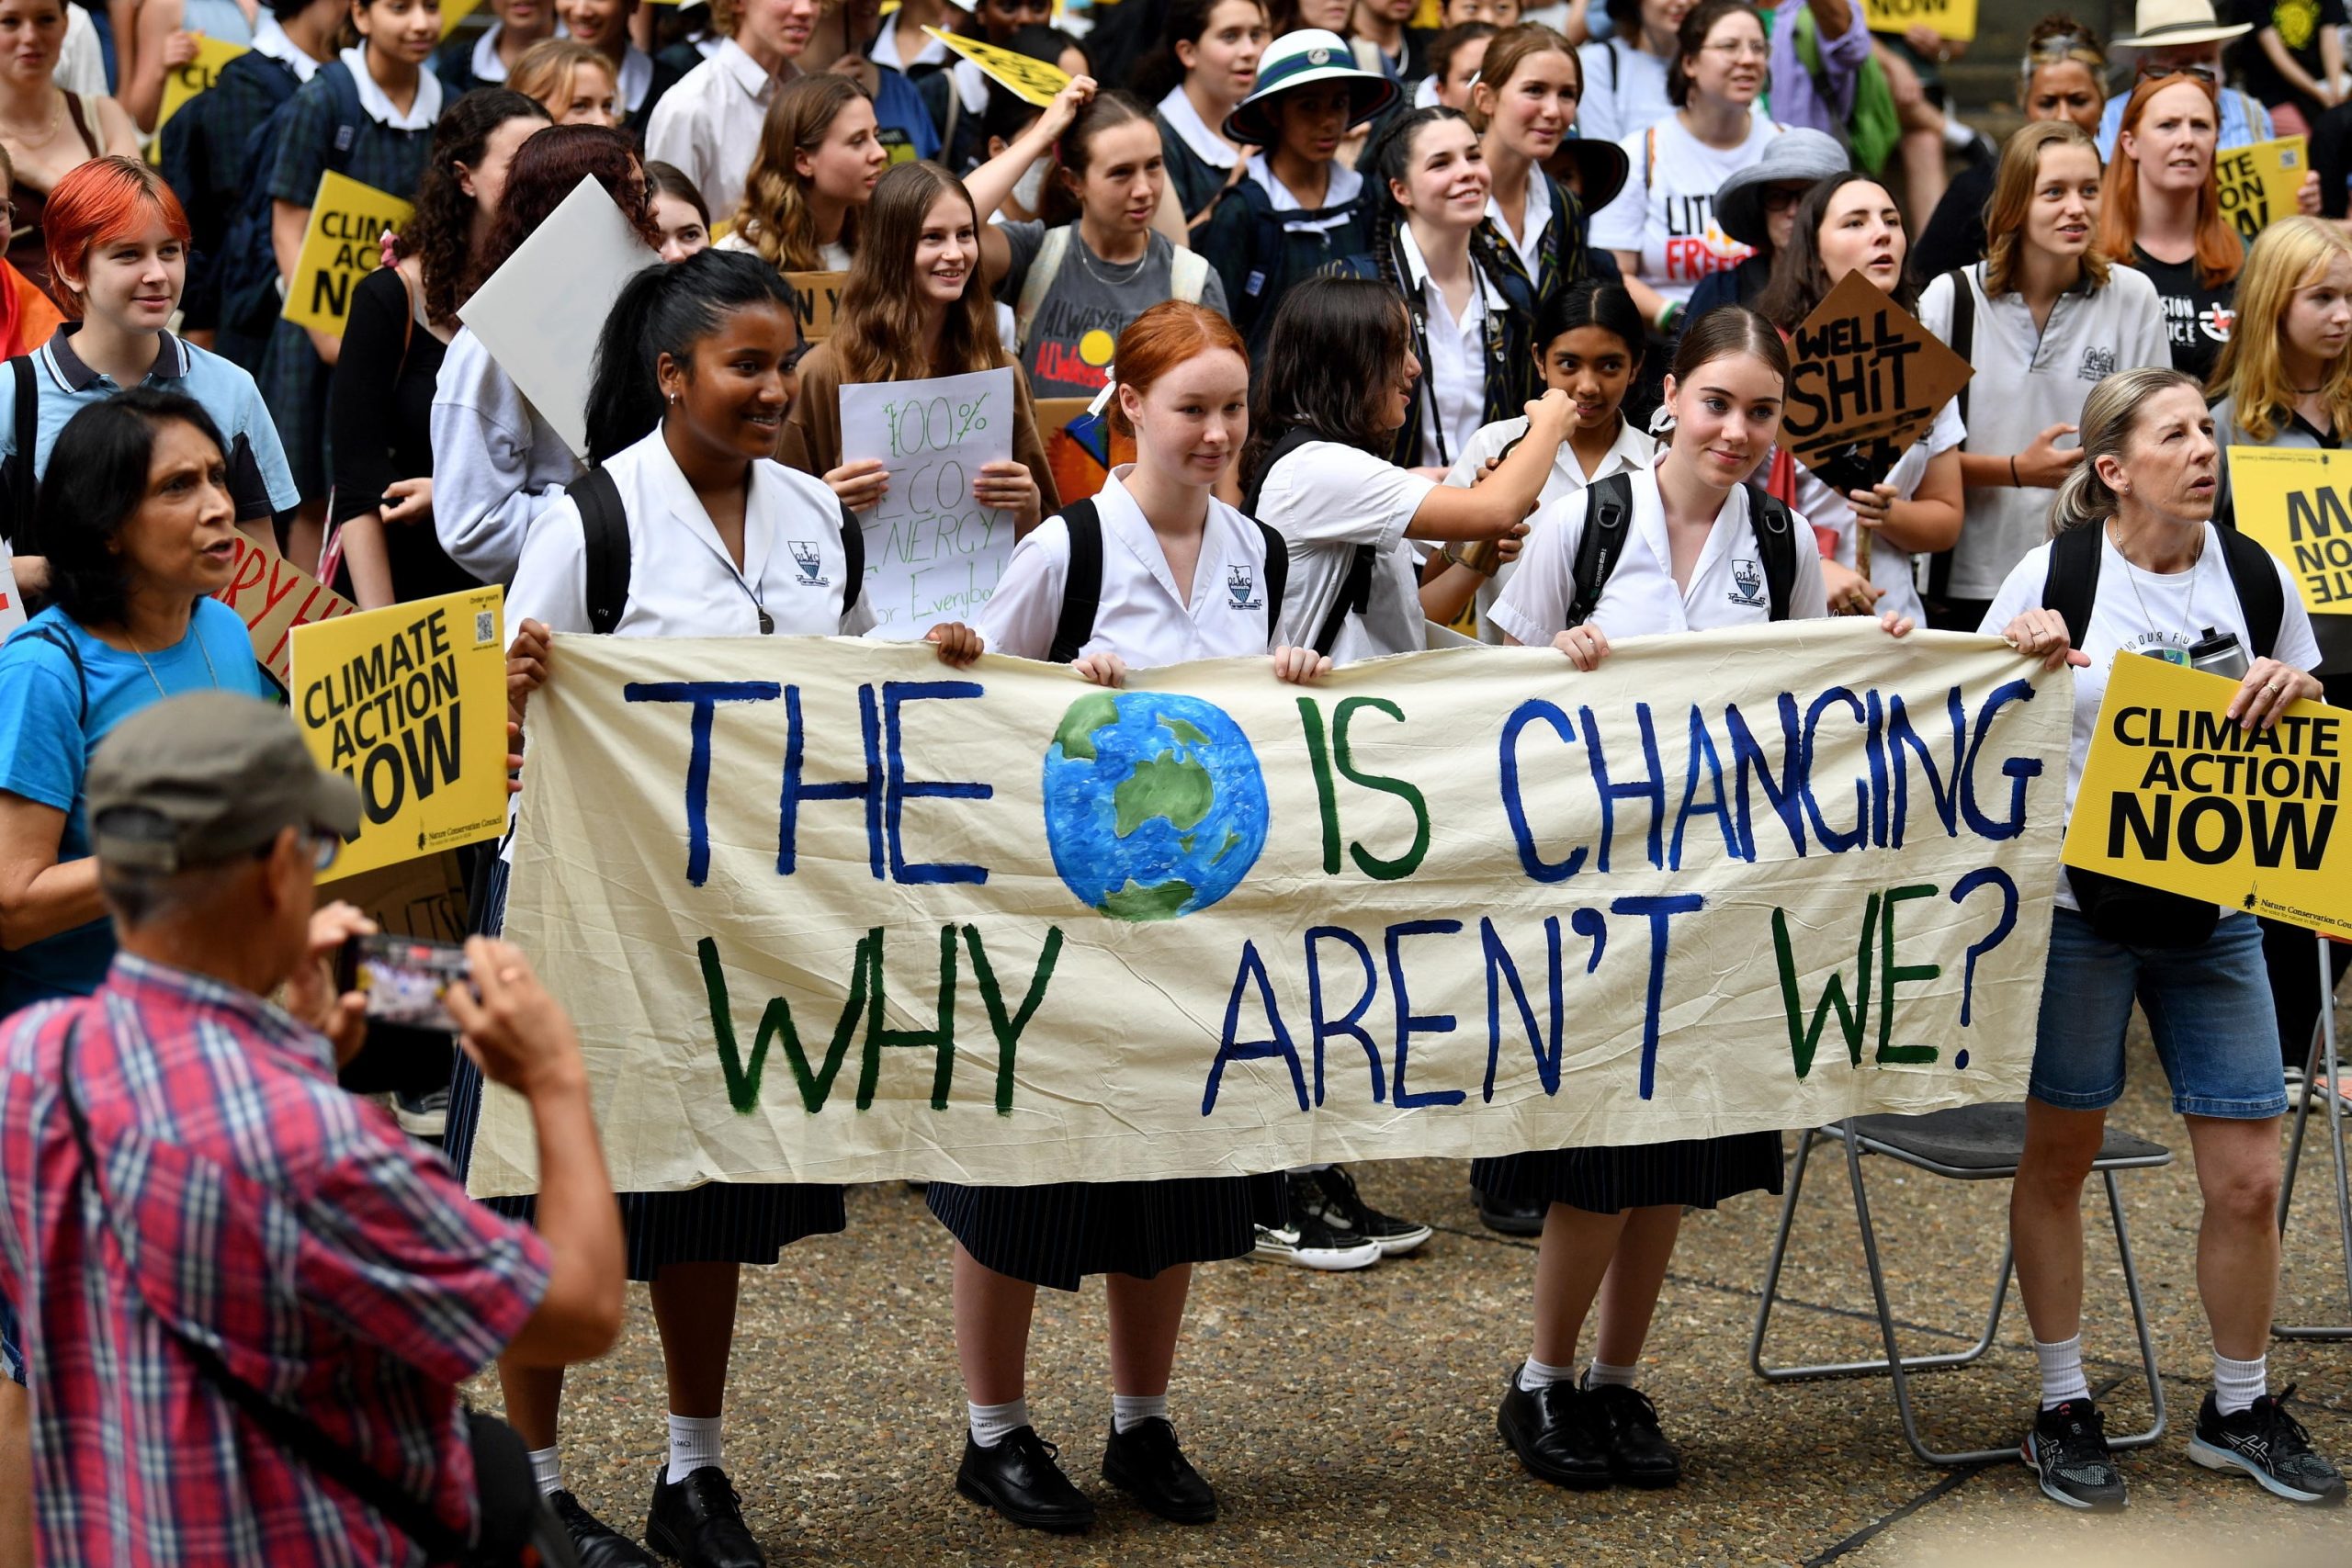 "Il mondo cambia, perché noi no?", Sydney, Australia